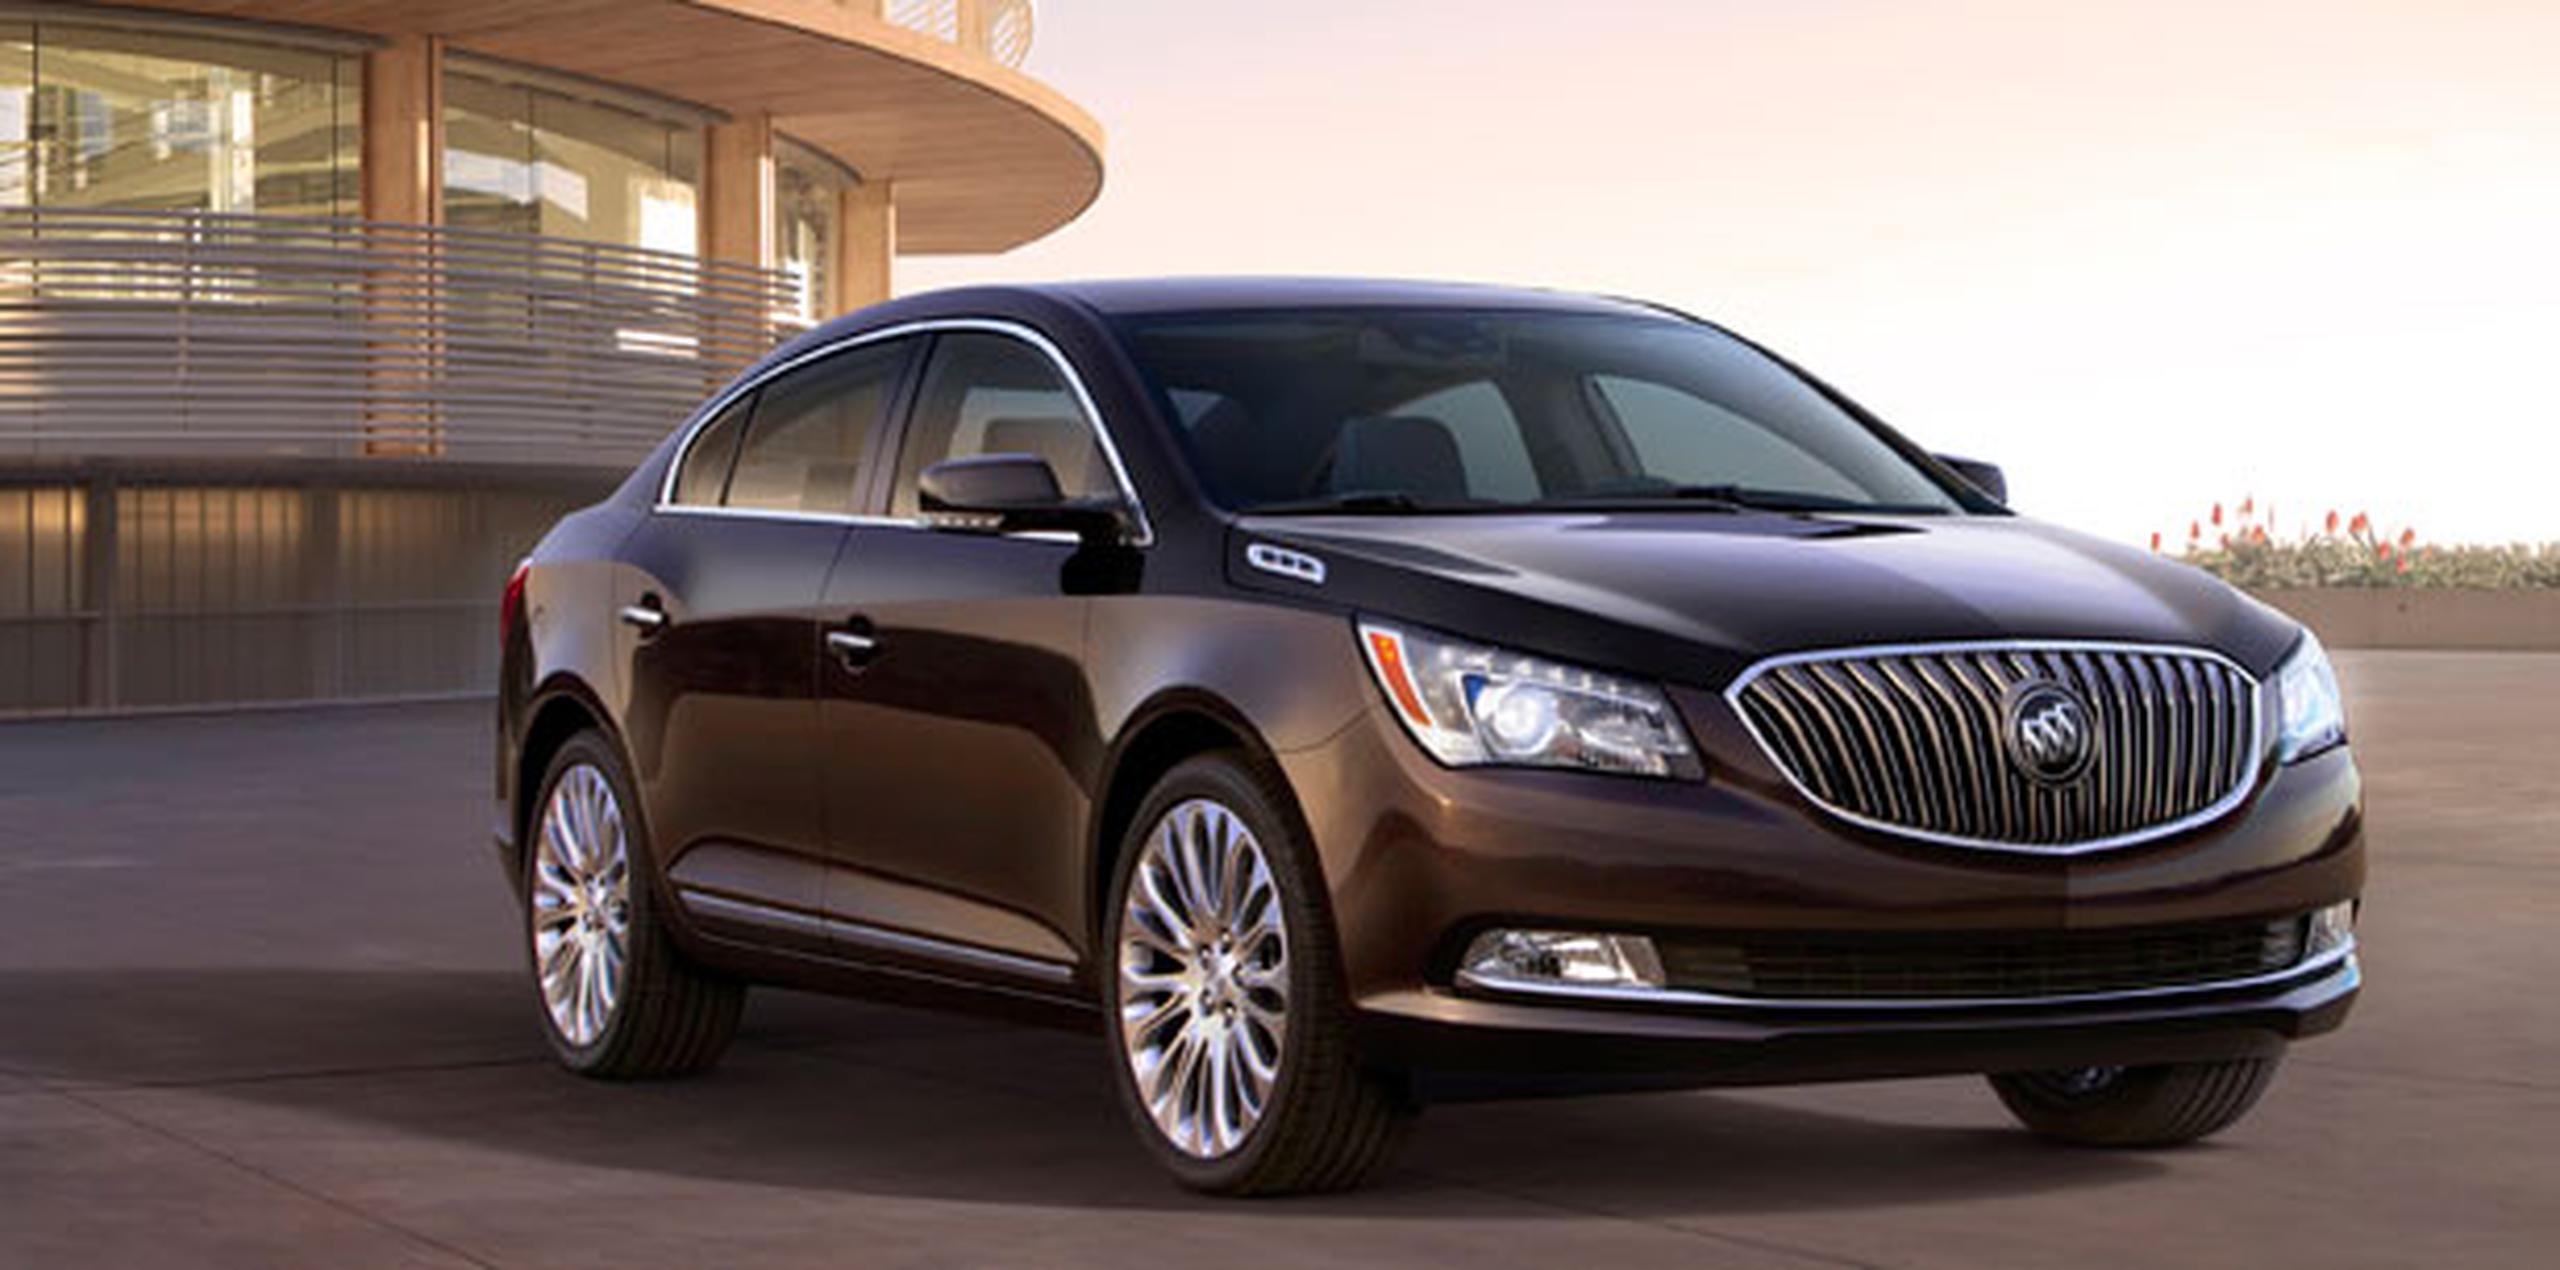 GM dará a conocer ambos modelos antes del inicio del salón del automóvil de Nueva York. (EFE)